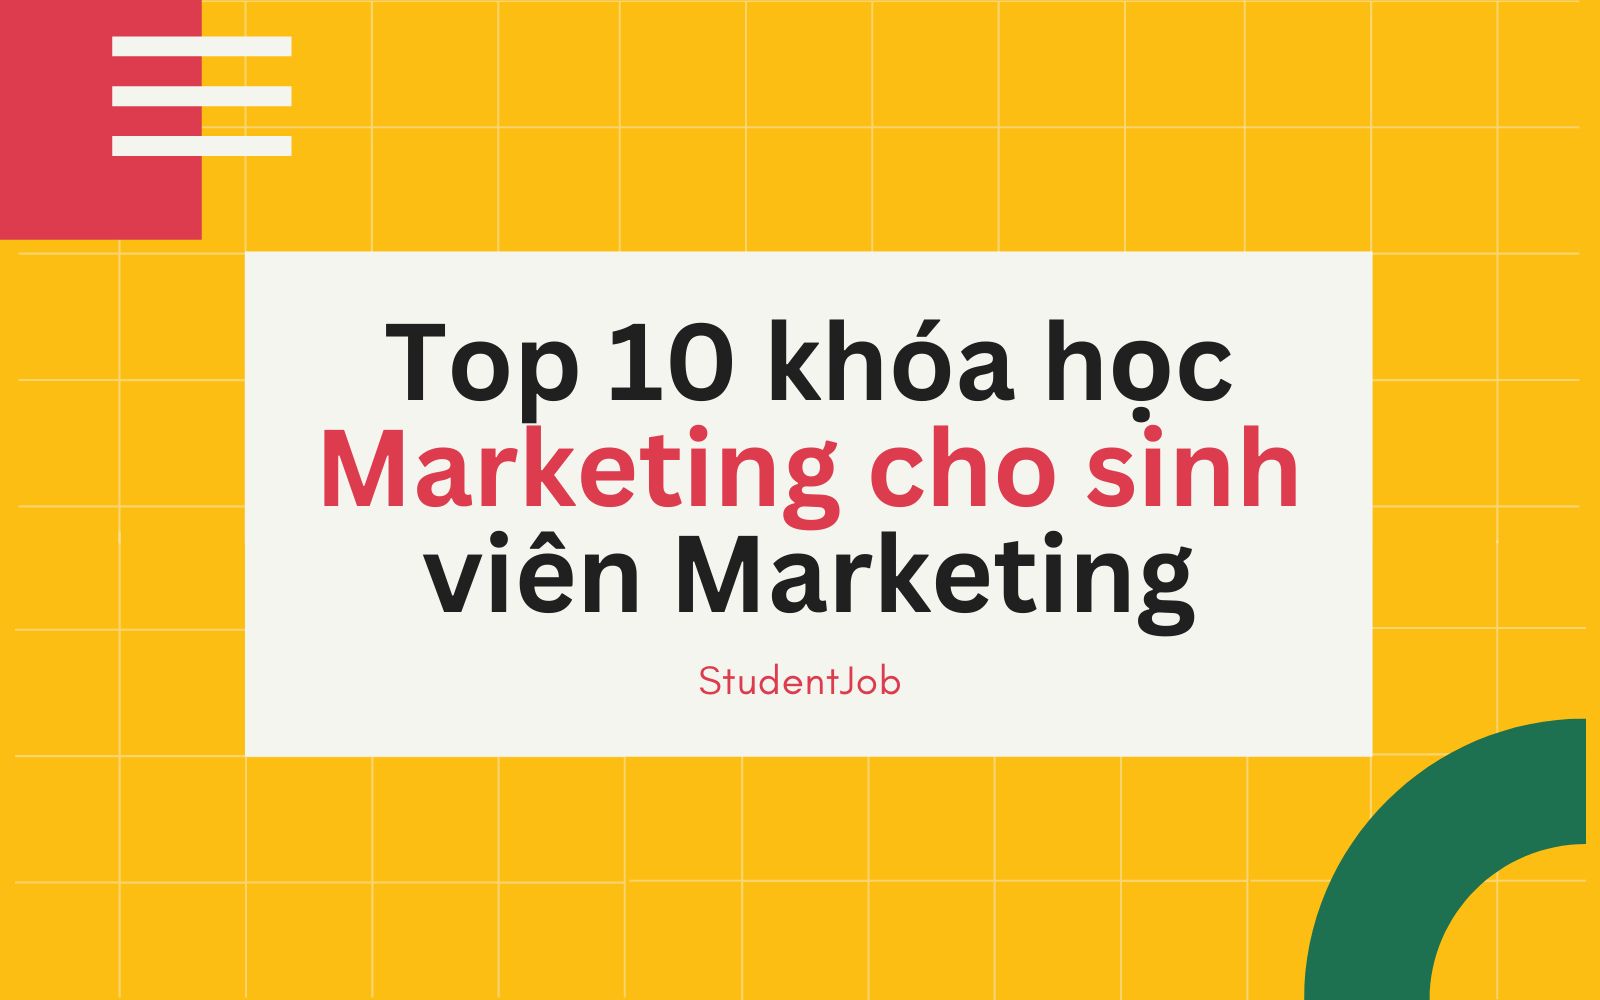 Top 10 khóa học Marketing cho sinh viên Marketing